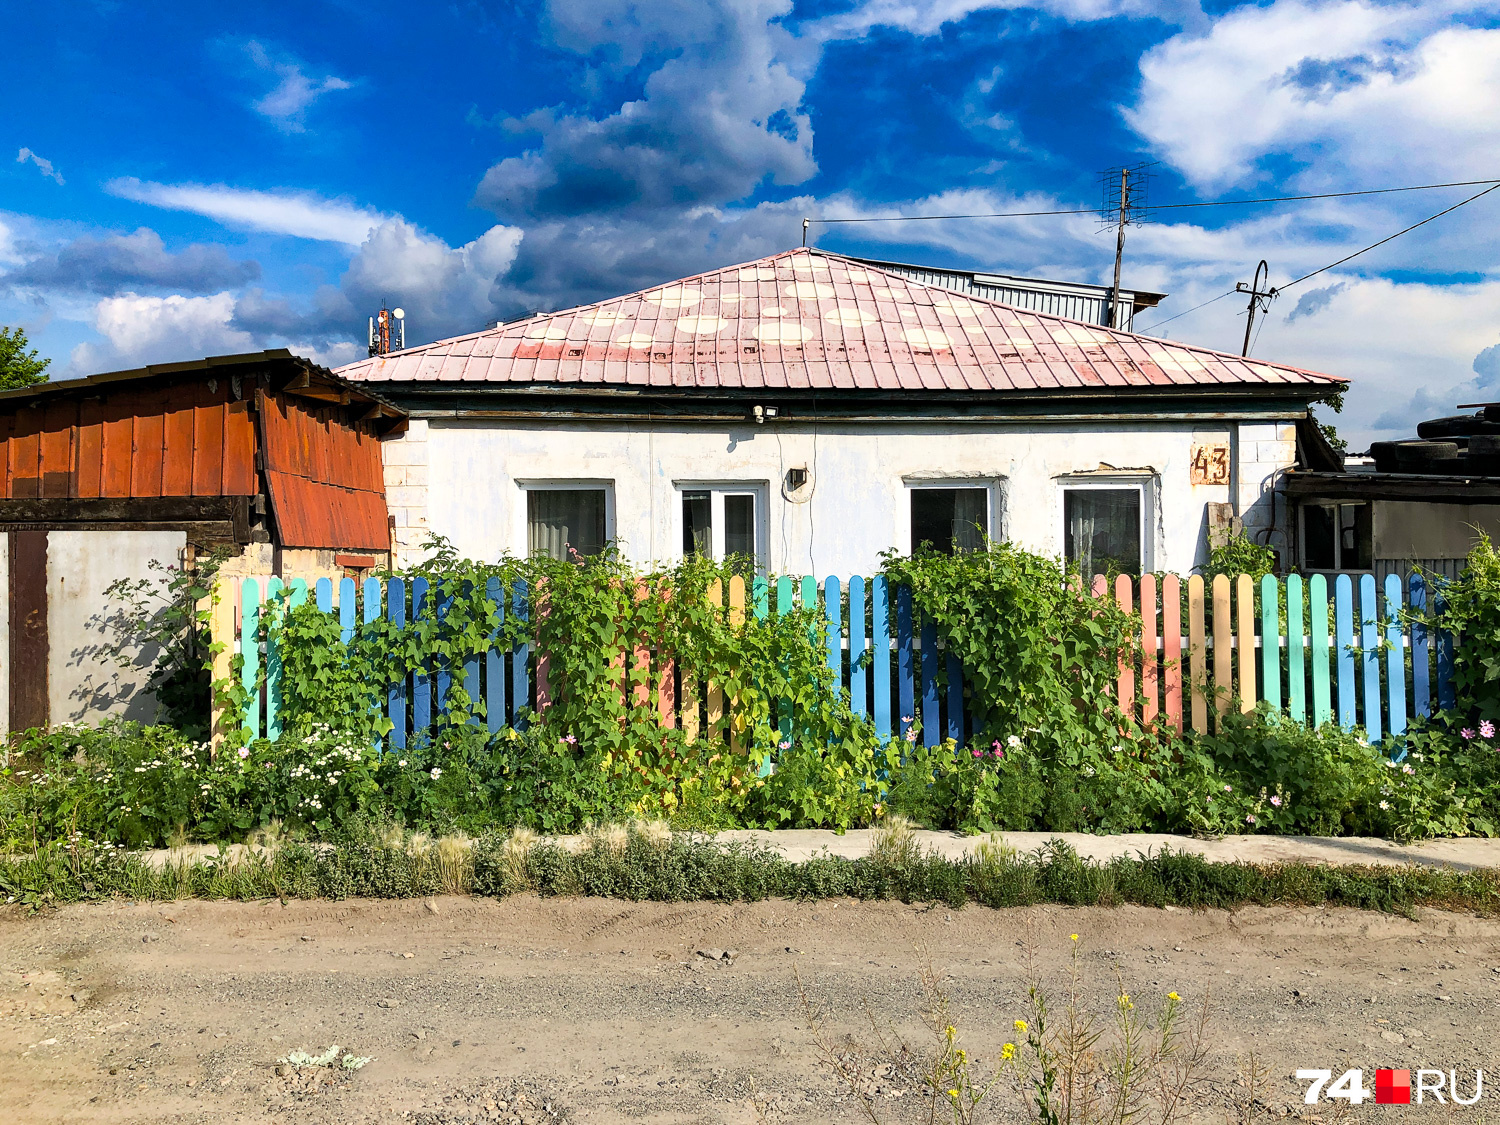 В Челябинске обнаружено жилище жизнерадостного человека. Полиция устанавливает причины и цели его появления